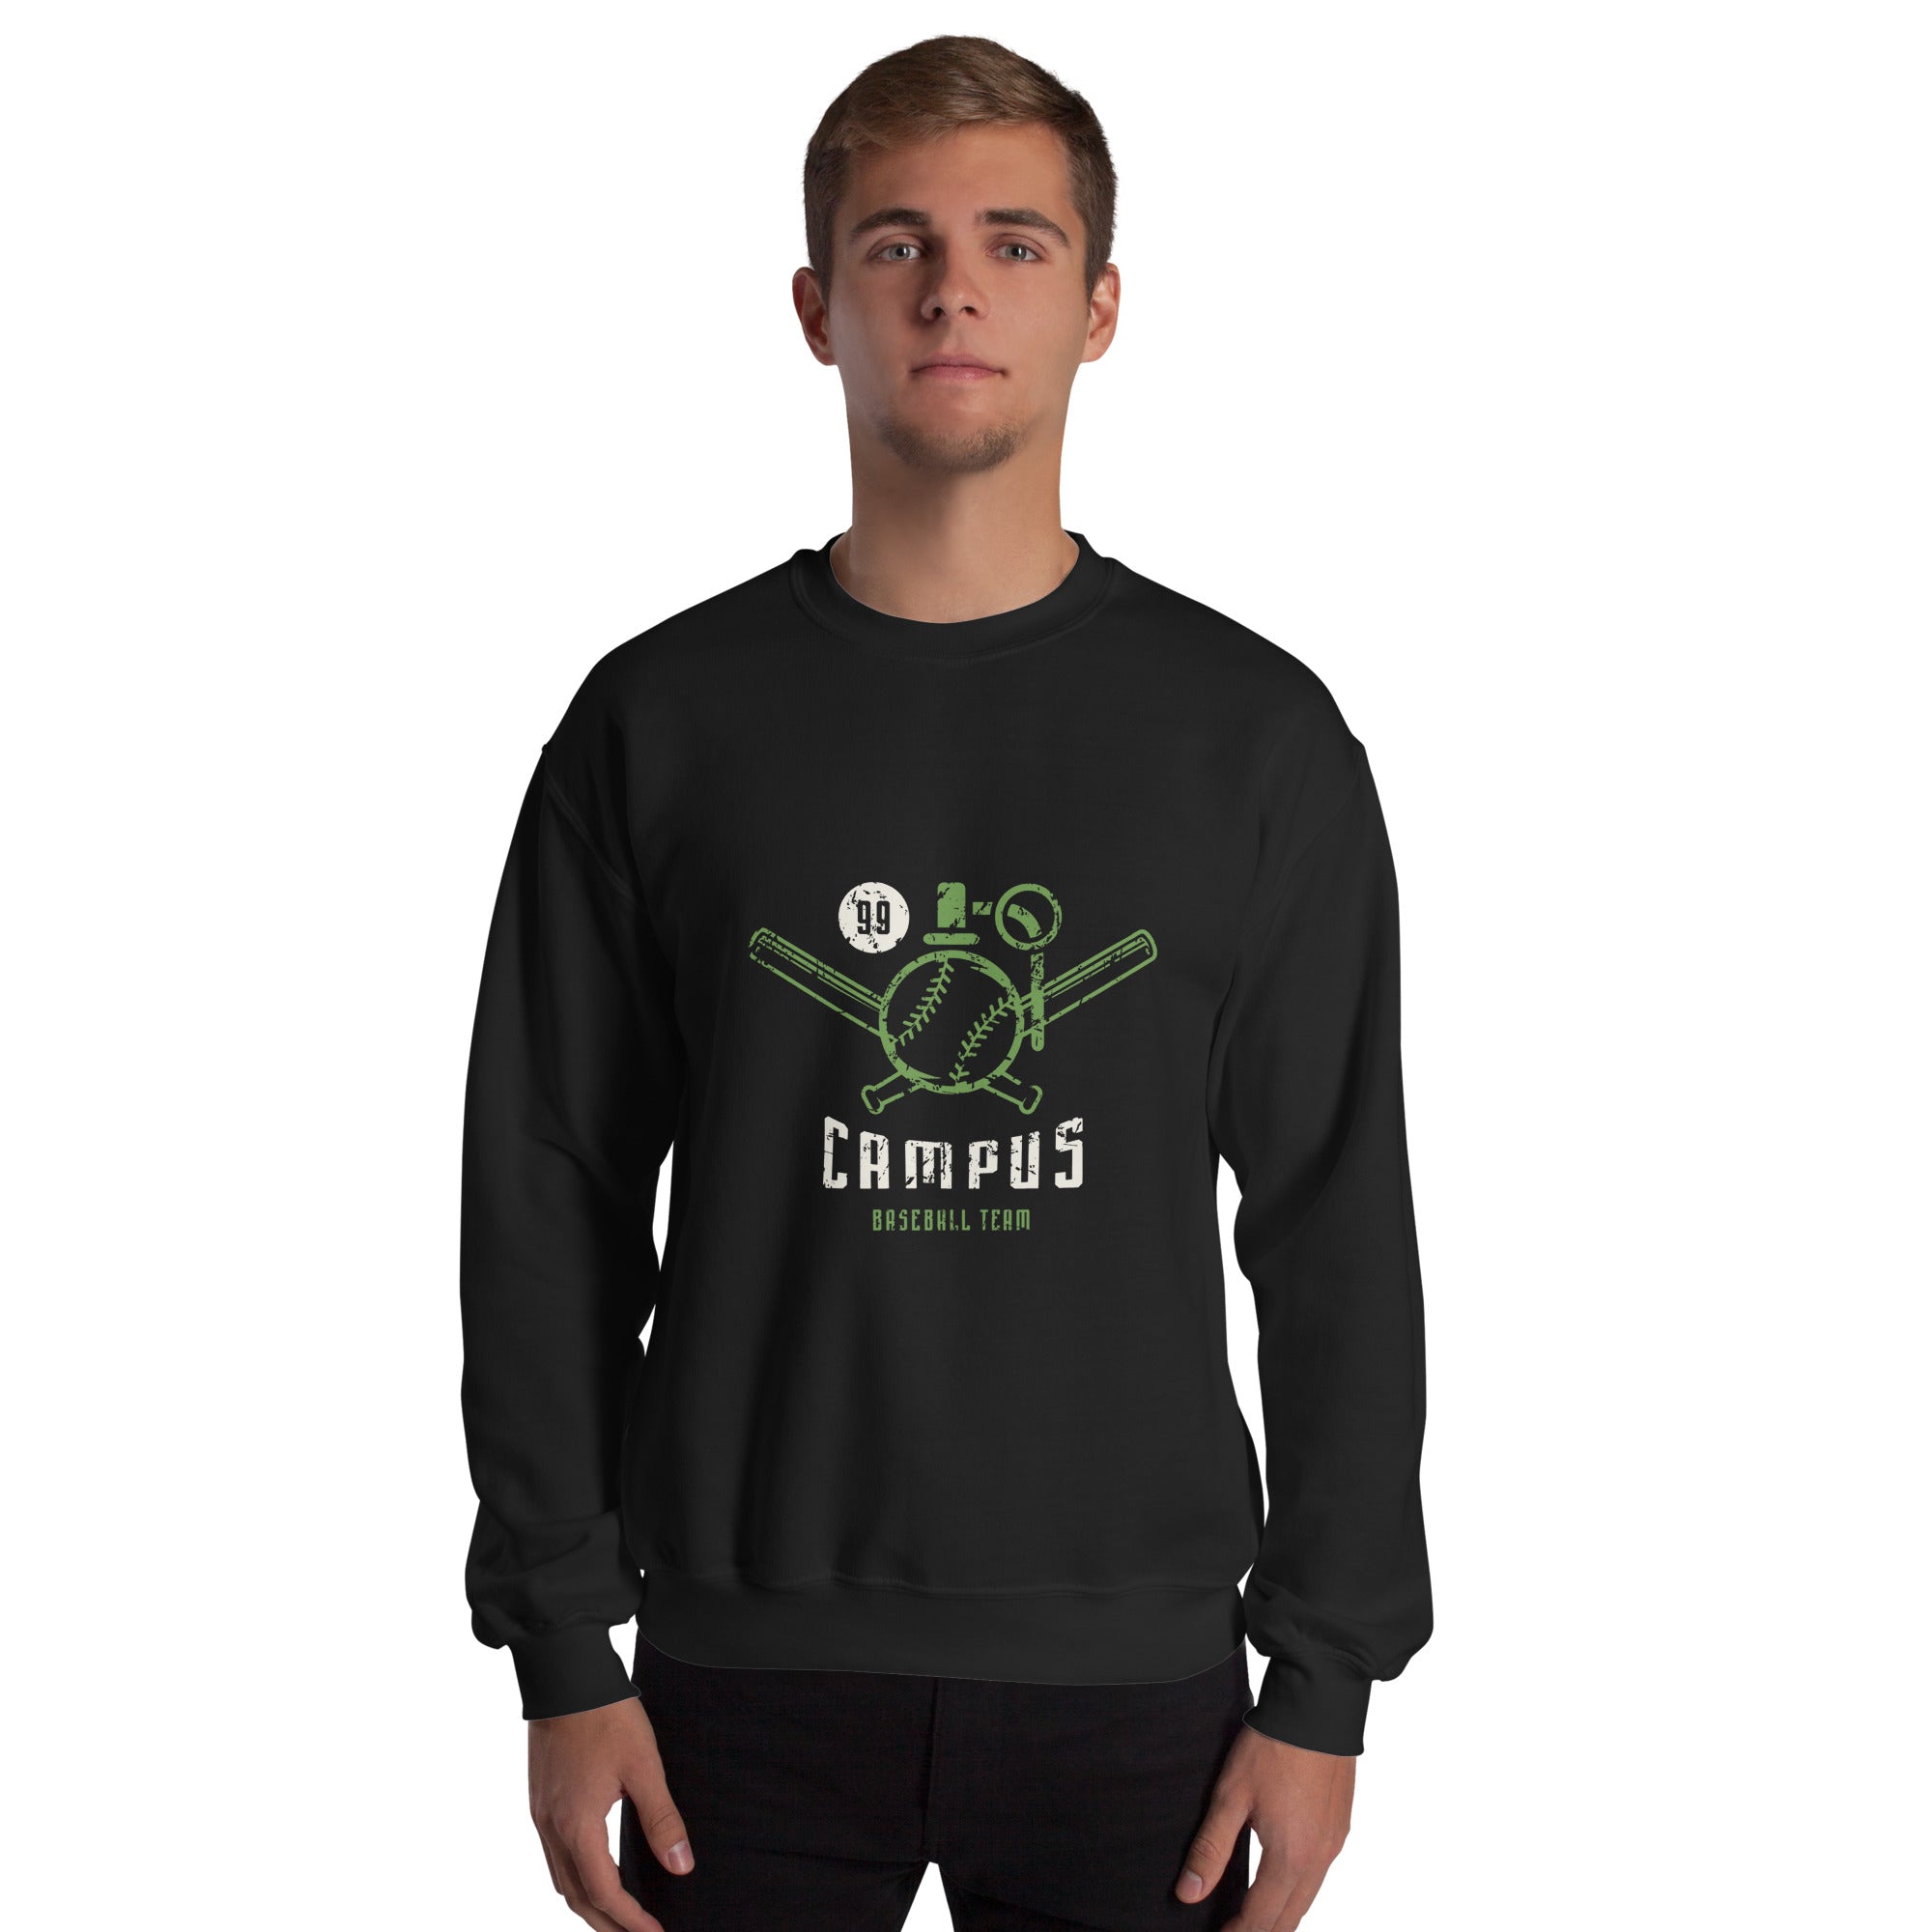 Campus Sweatshirt for men